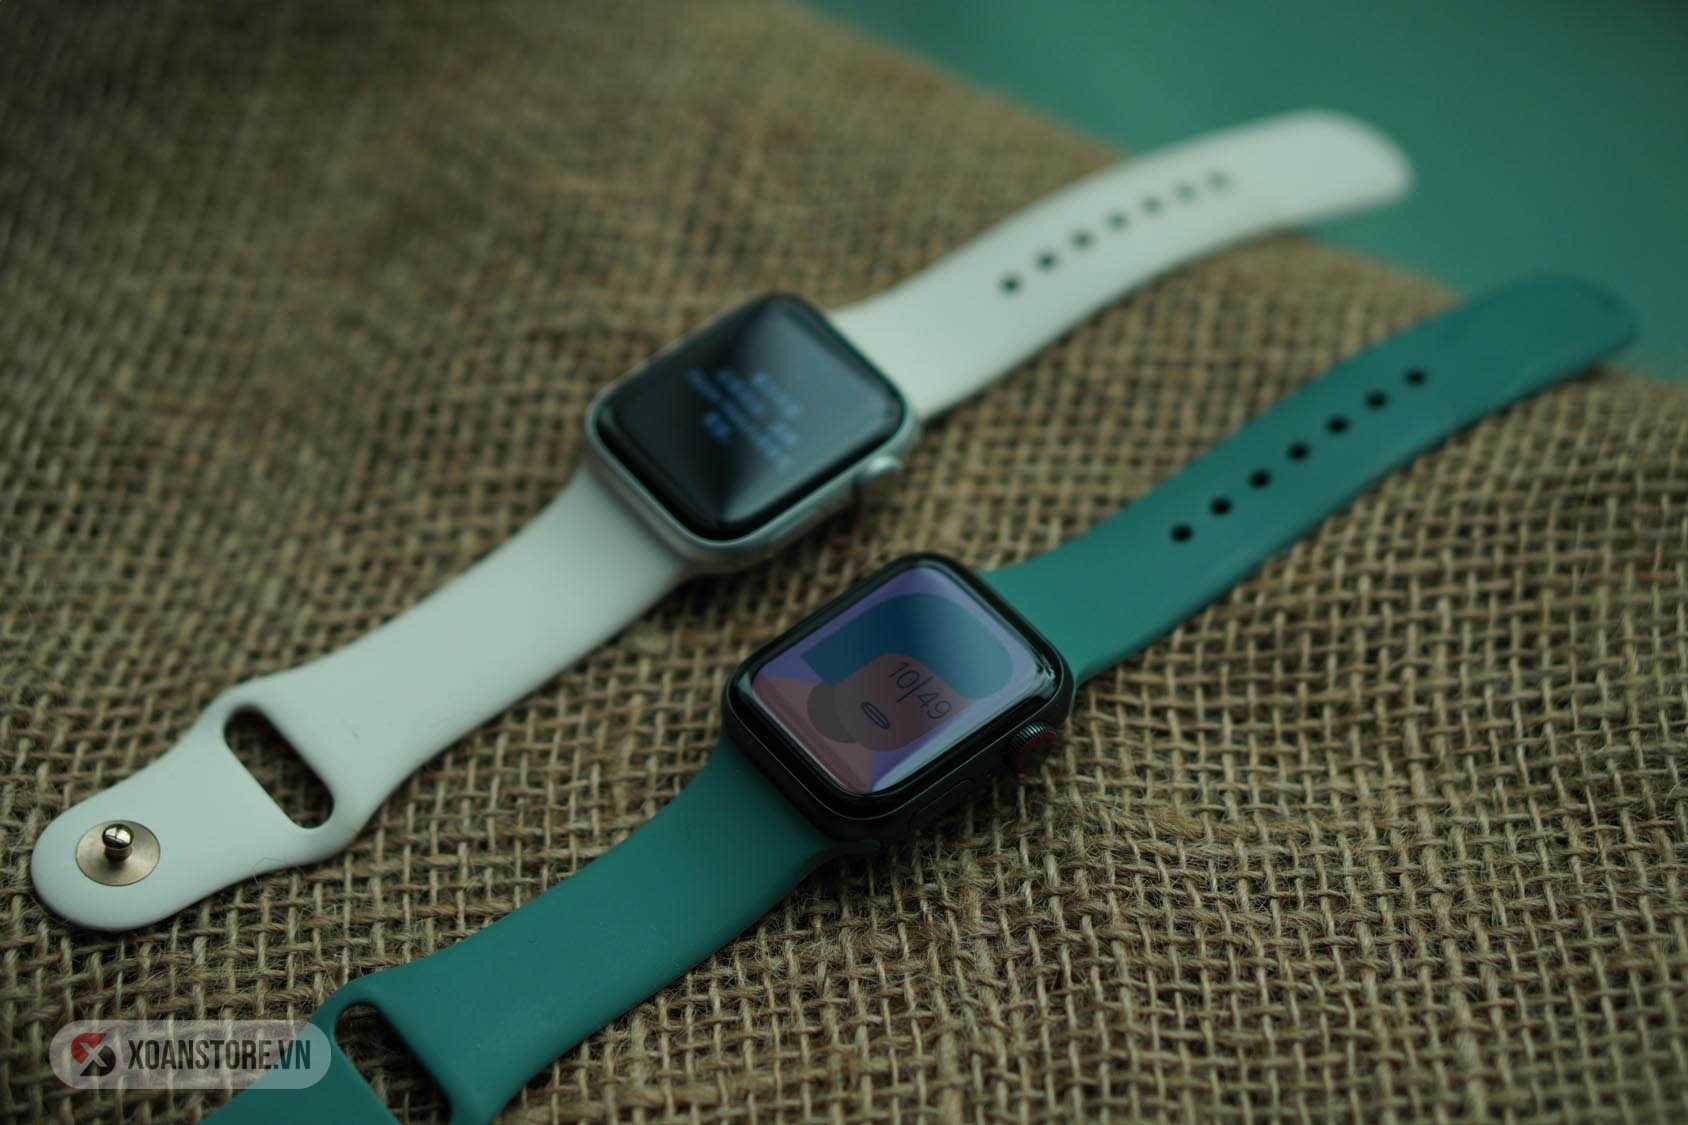 Các chức năng cơ bản và kết nối ở Apple Watch 4 vẫn đầy đủ